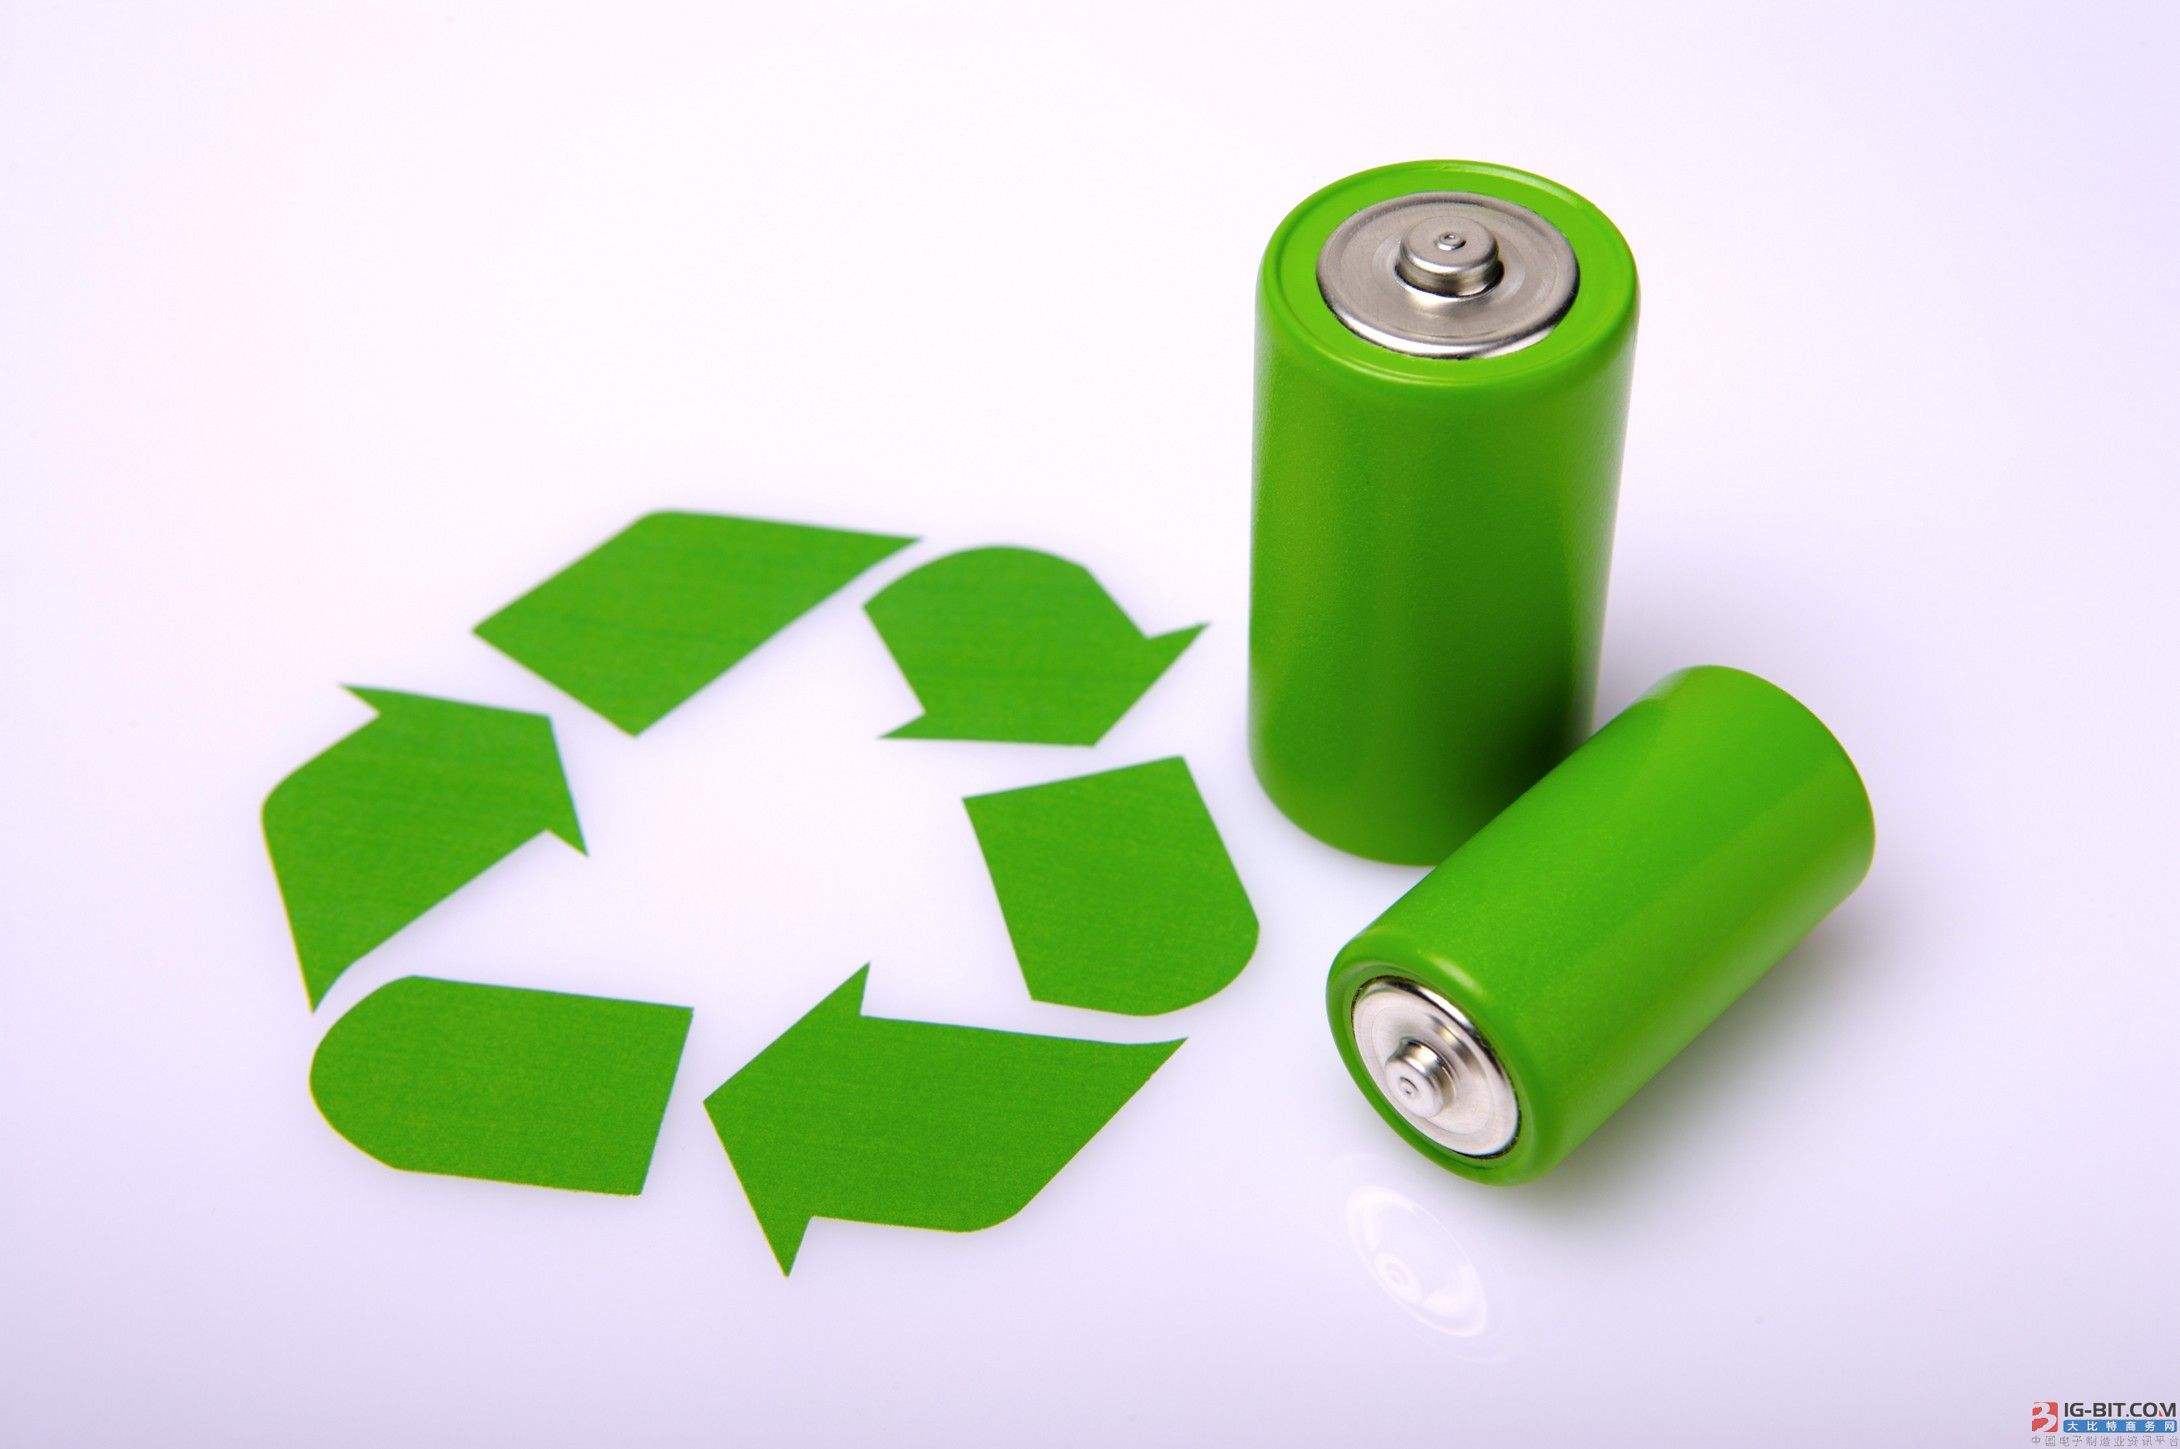 废旧动力电池回收利用调查:电池标准、成本等难题有待突破